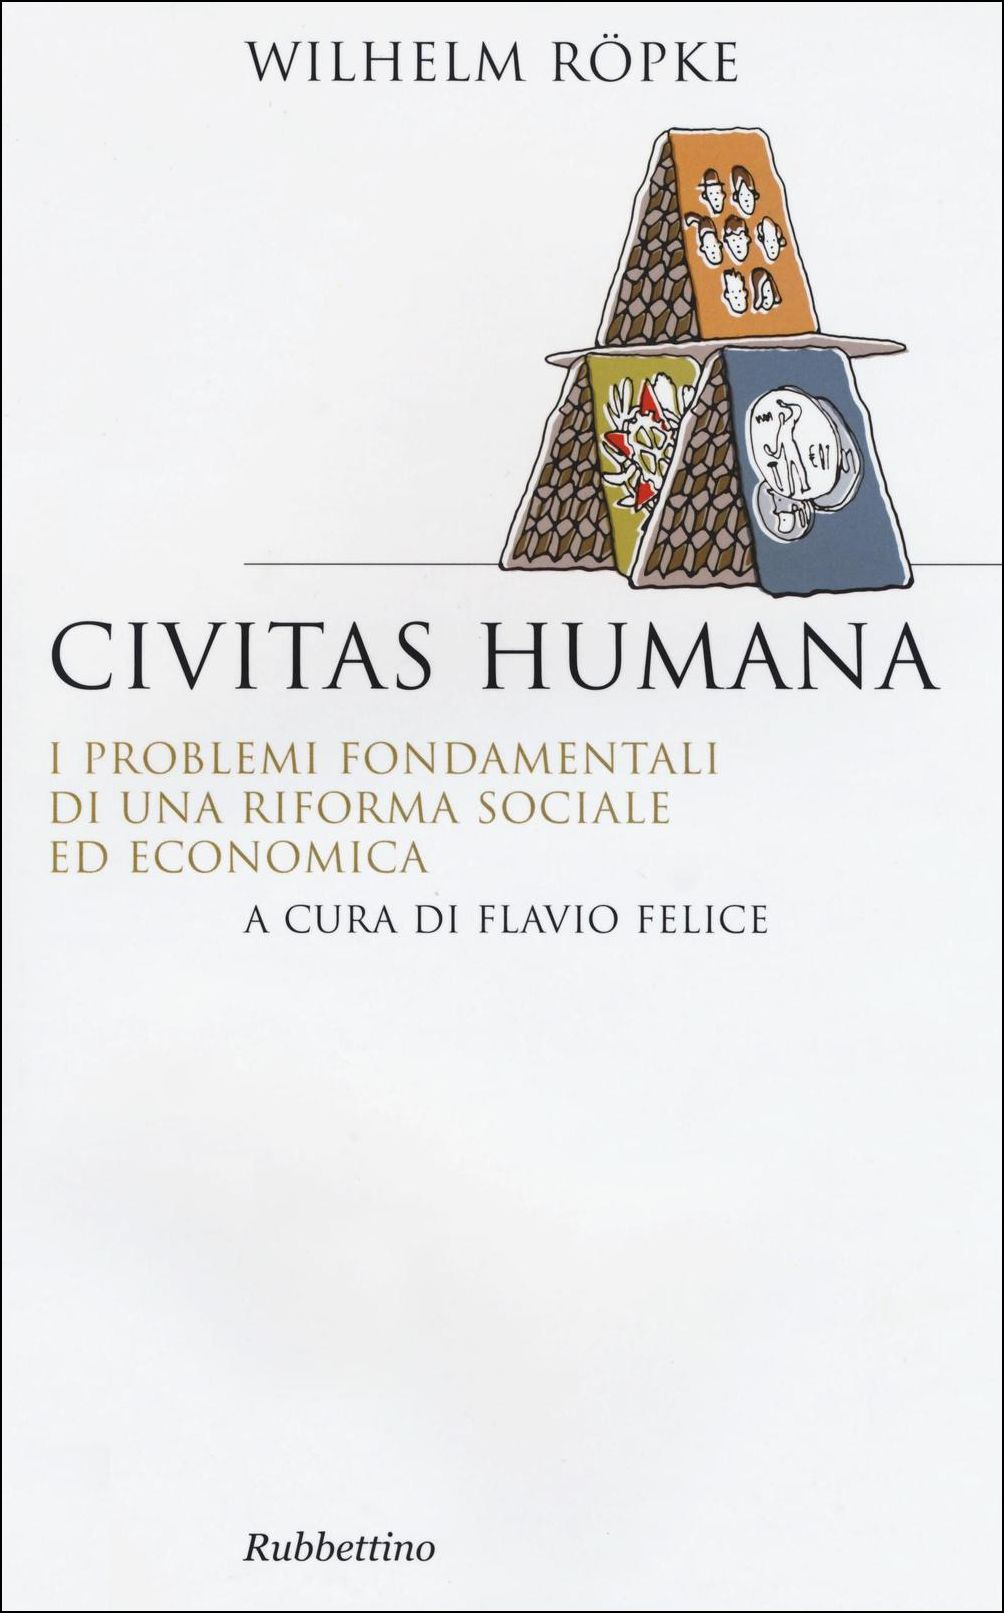 Image of Civitas humana. I problemi fondamentali di una riforma sociale ed economica